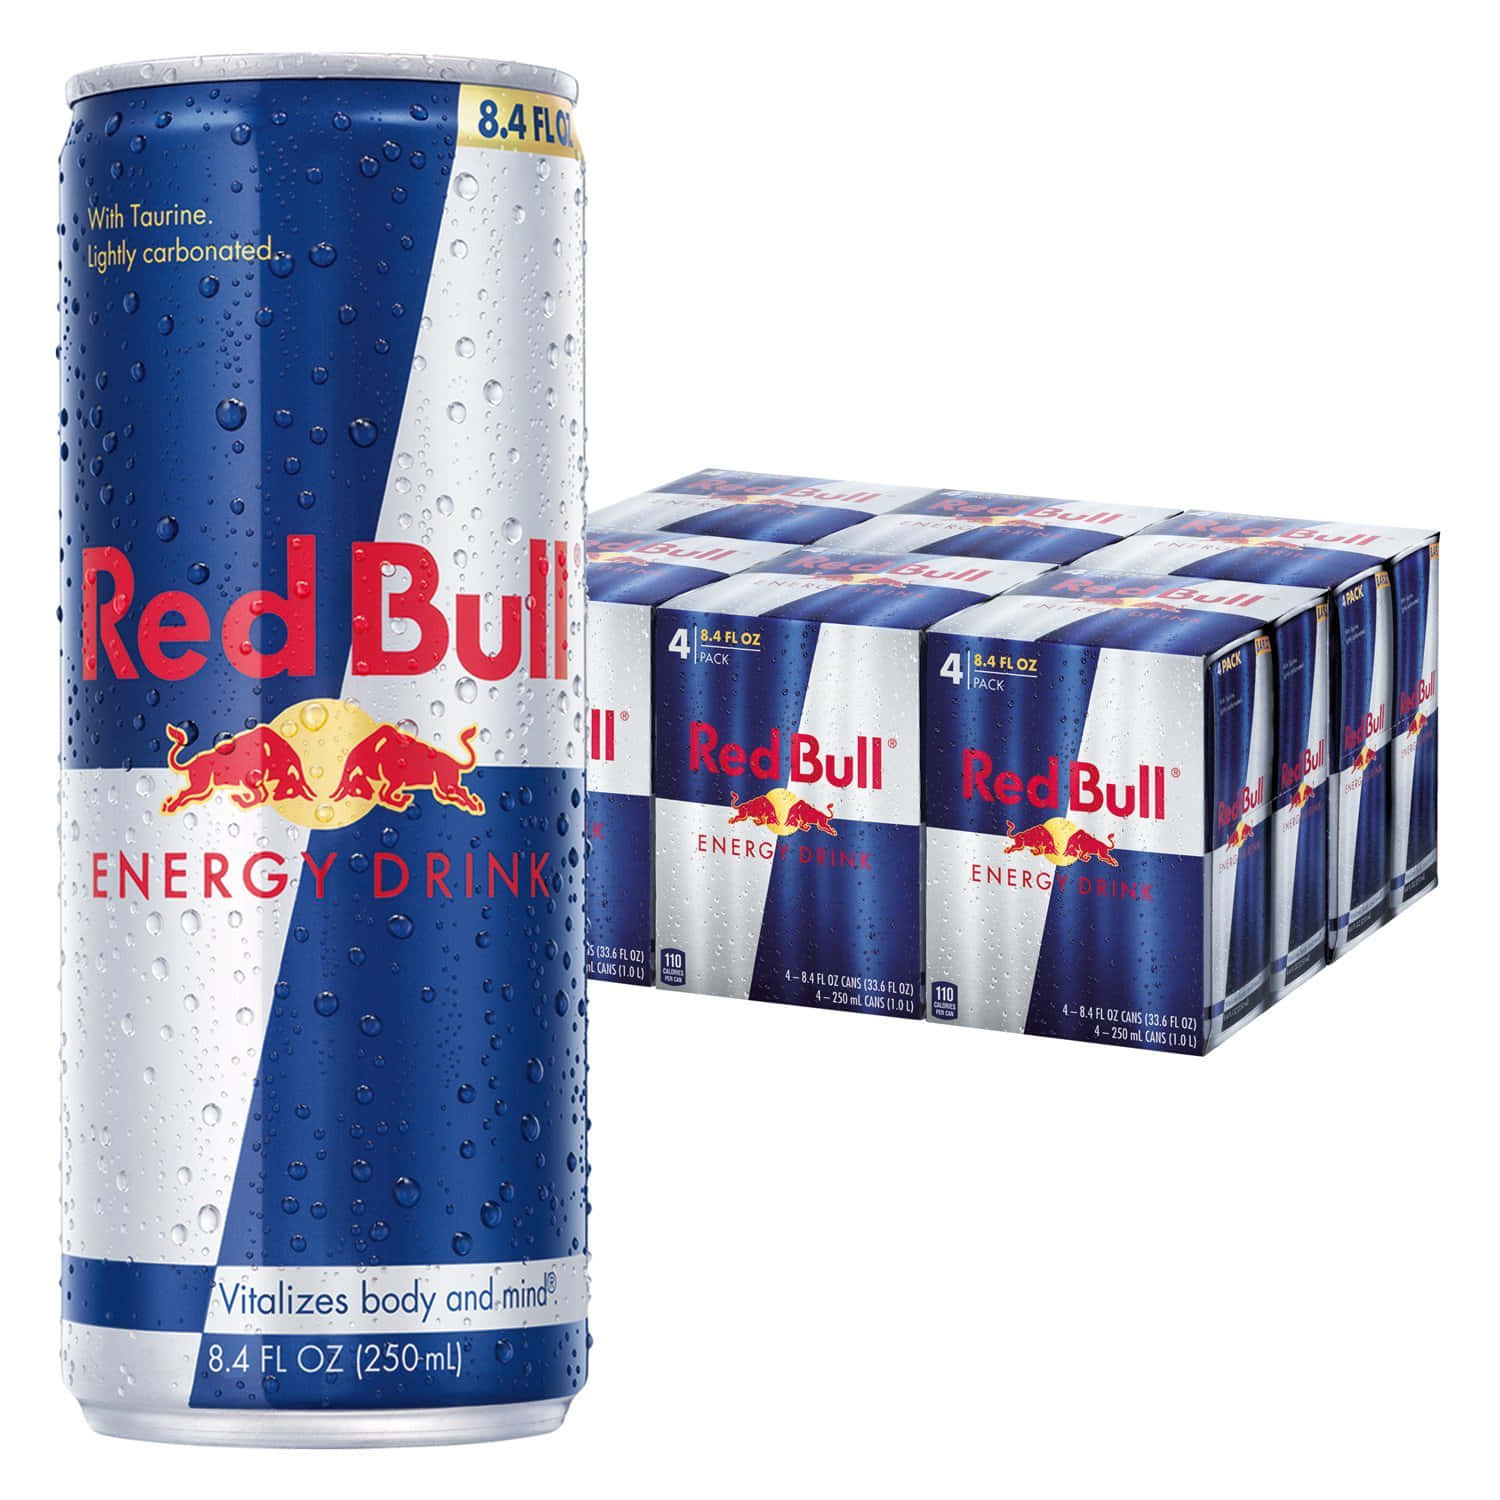 Alimentala Tua Passione Con Red Bull